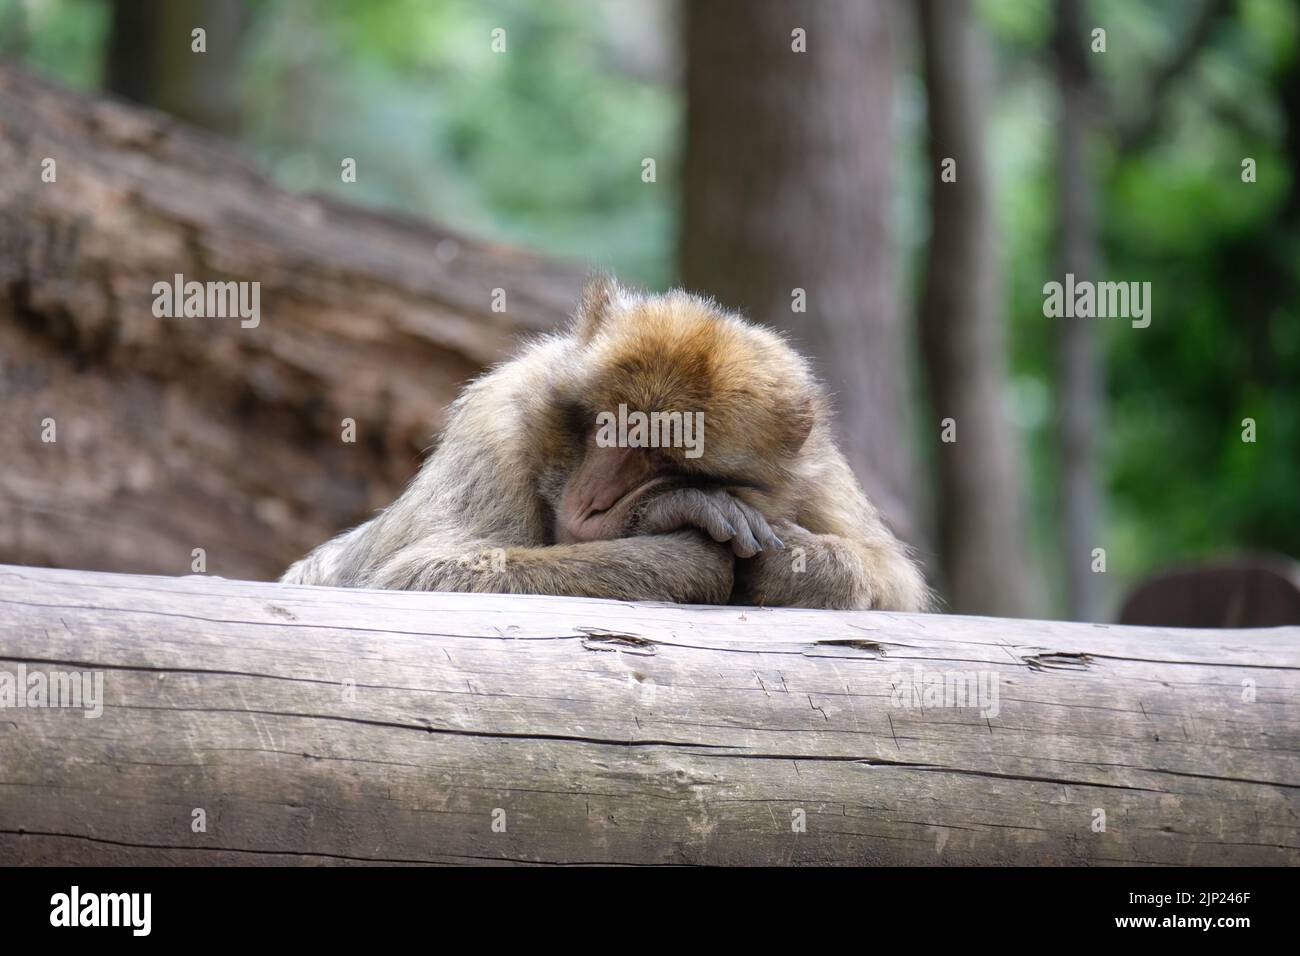 Cape barbaire de magot dormant et reposant sur un tronc d'arbre dans une forêt Banque D'Images